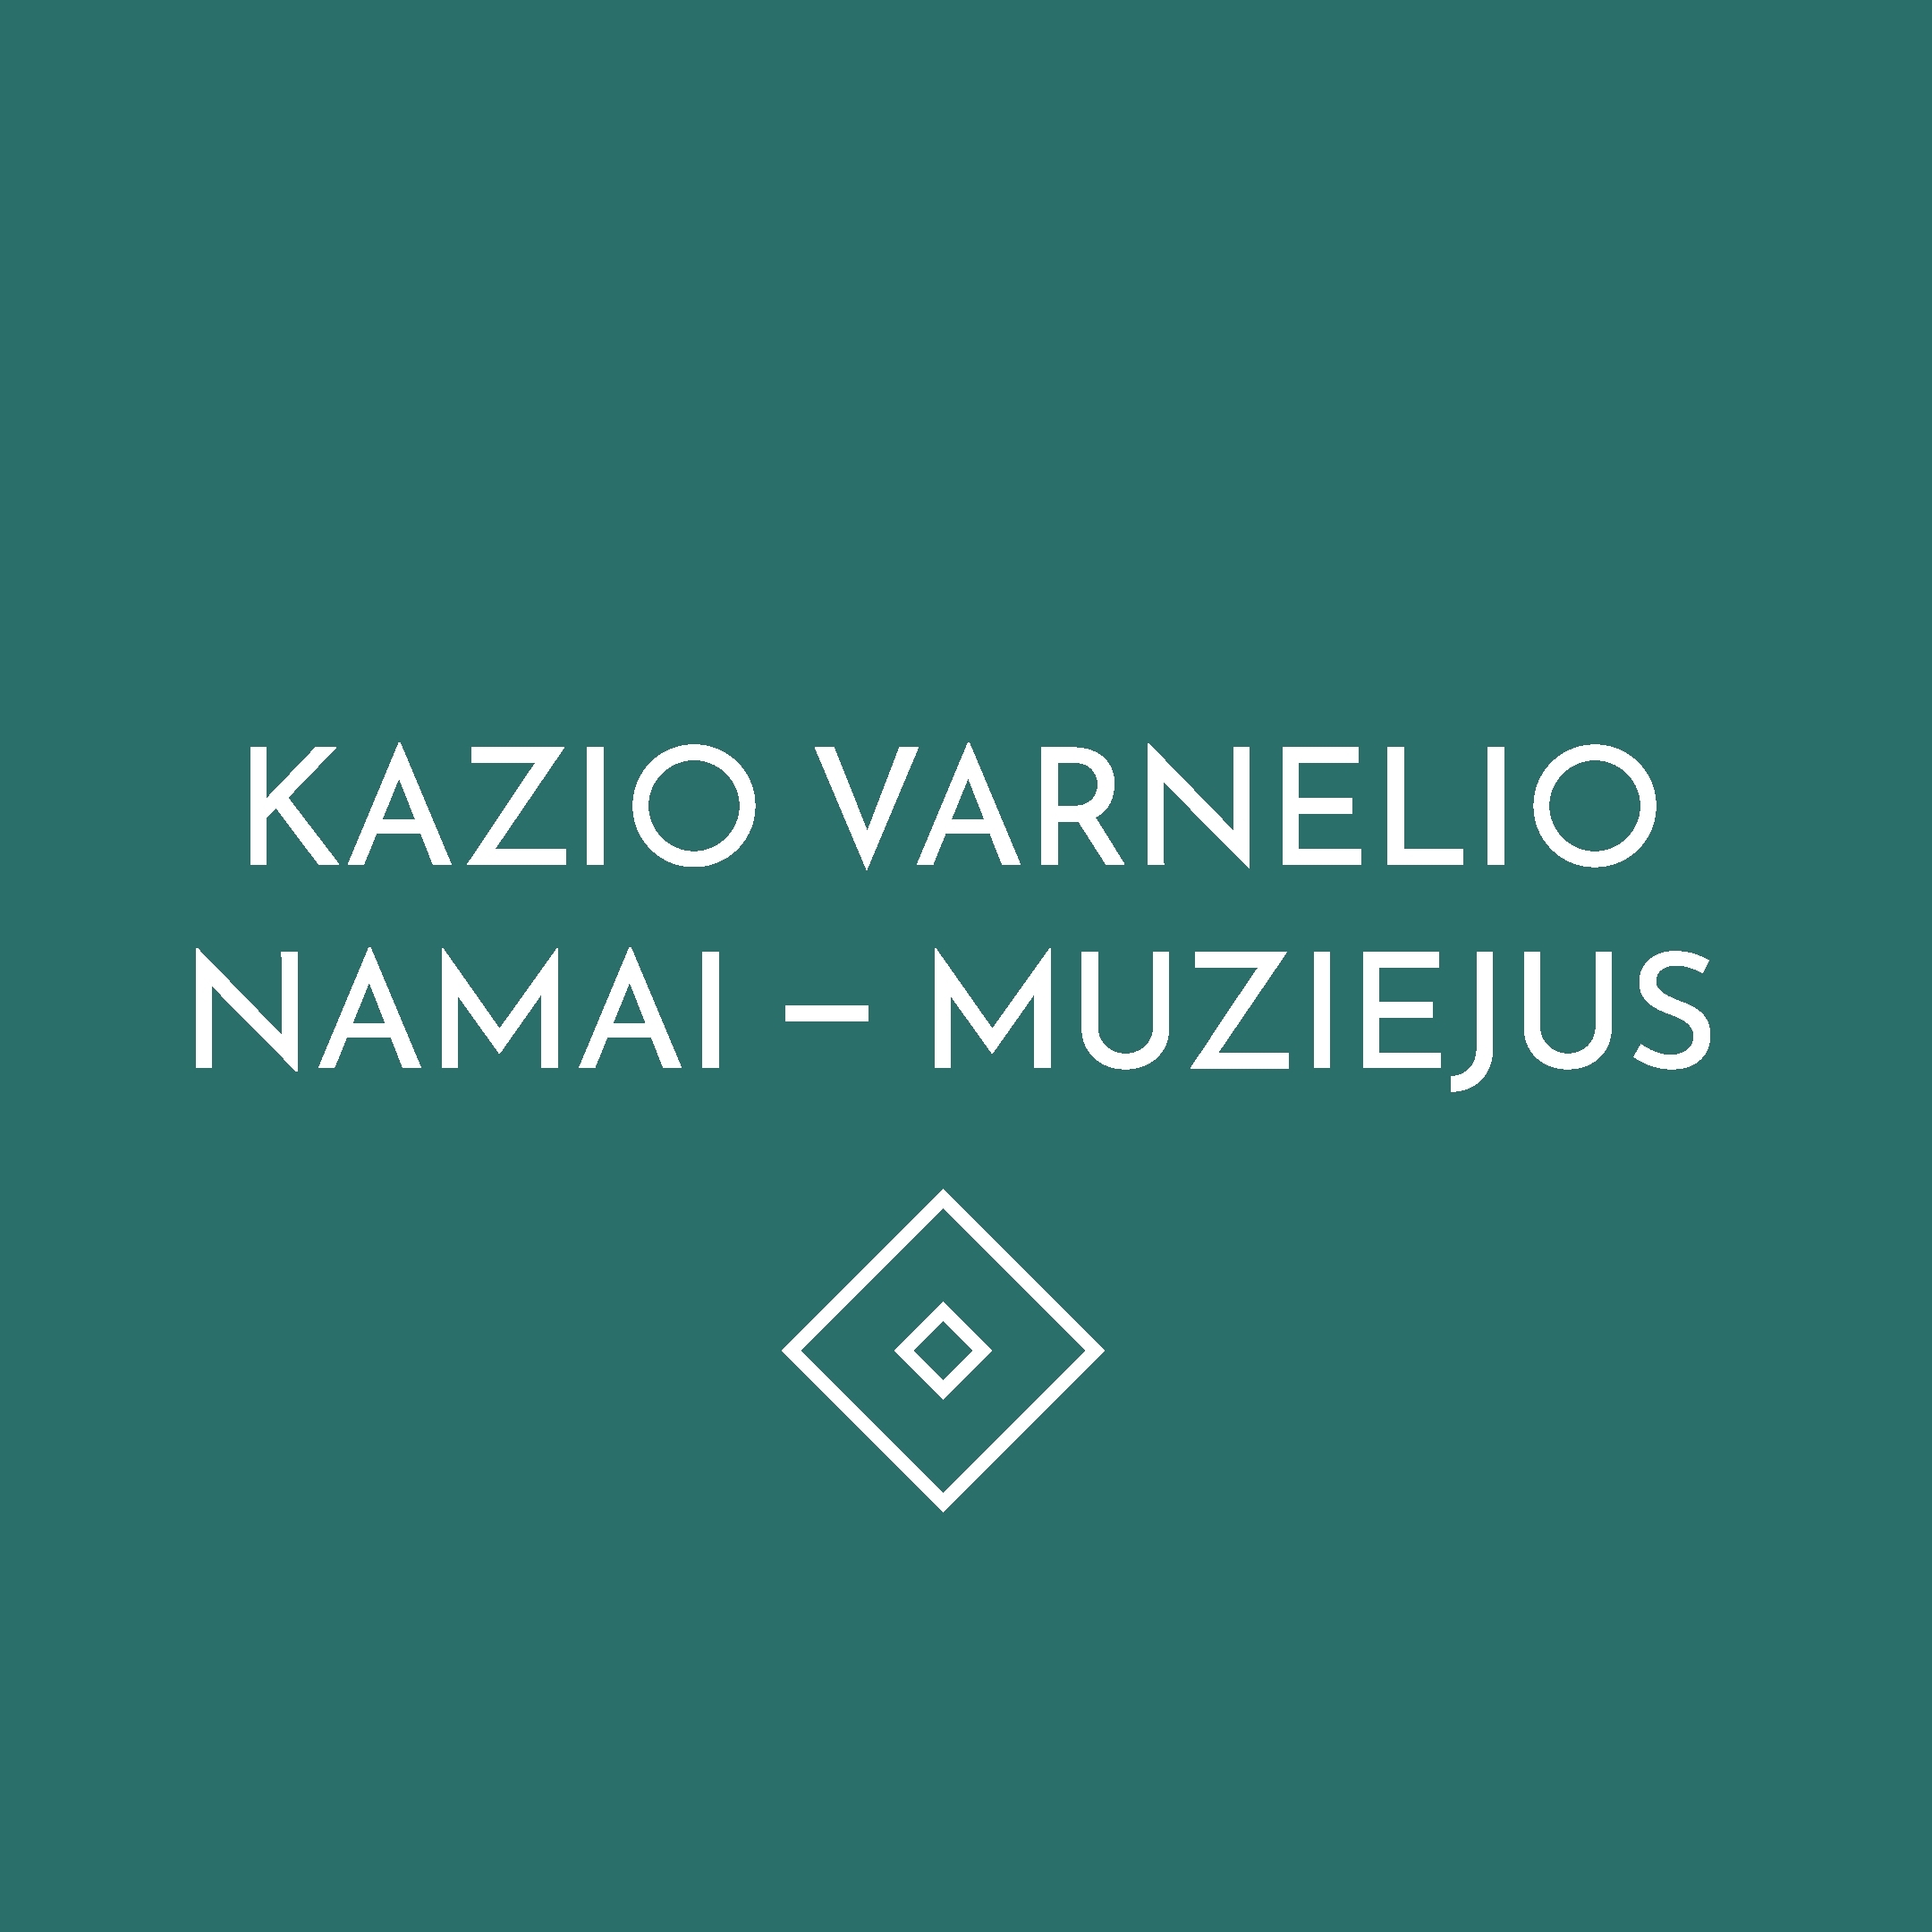 Kazio Varnelio namai – muziejus